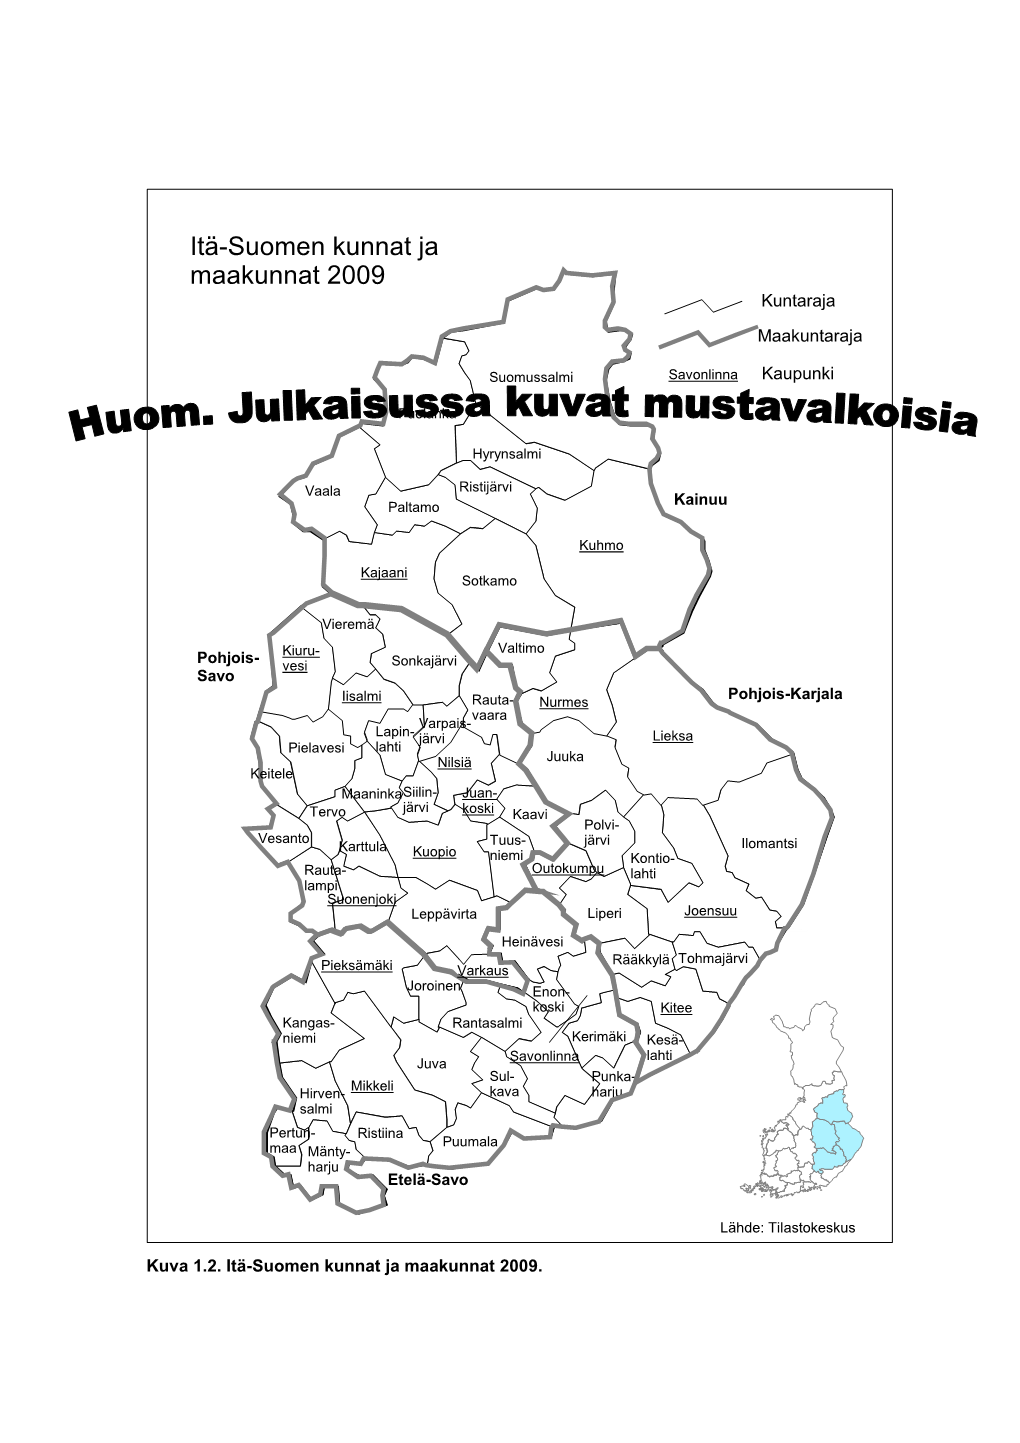 Itä-Suomen Kunnat Ja Maakunnat 2009 Kuntaraja